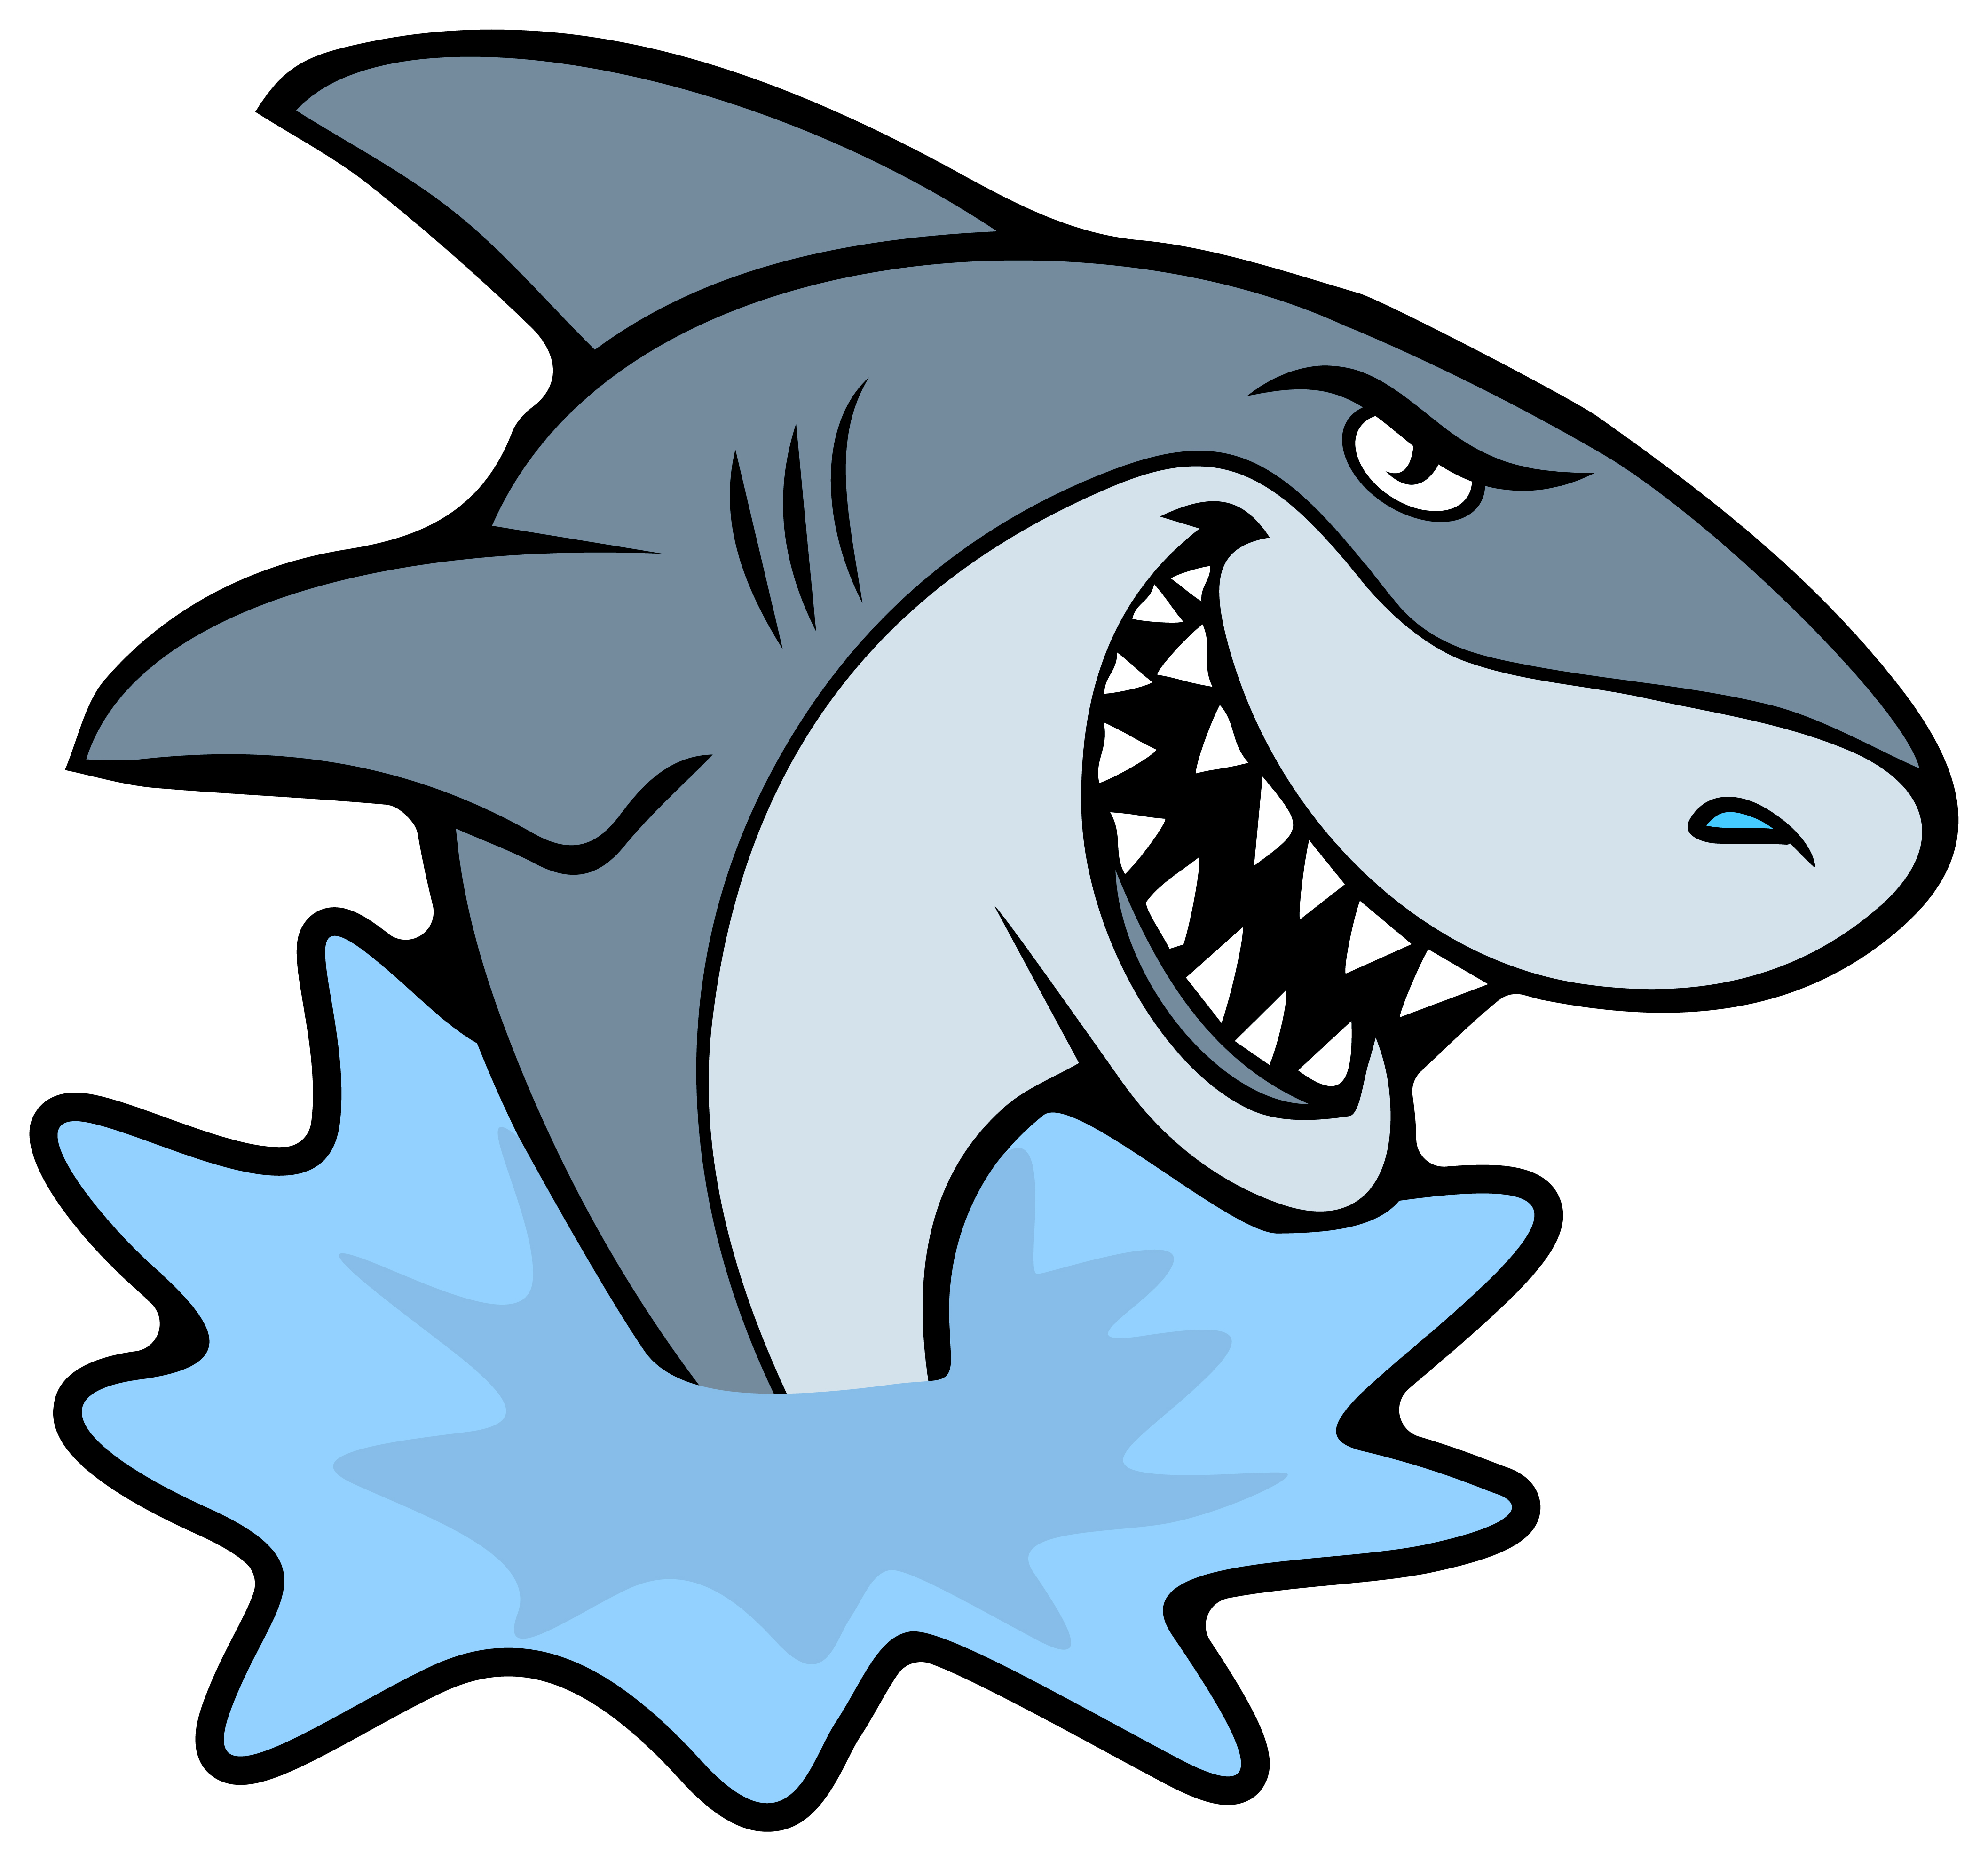 4x Aufkleber Shark Hai 6x6 cm für Auto KFZ Handy Laptop Haifisch Sticker grau